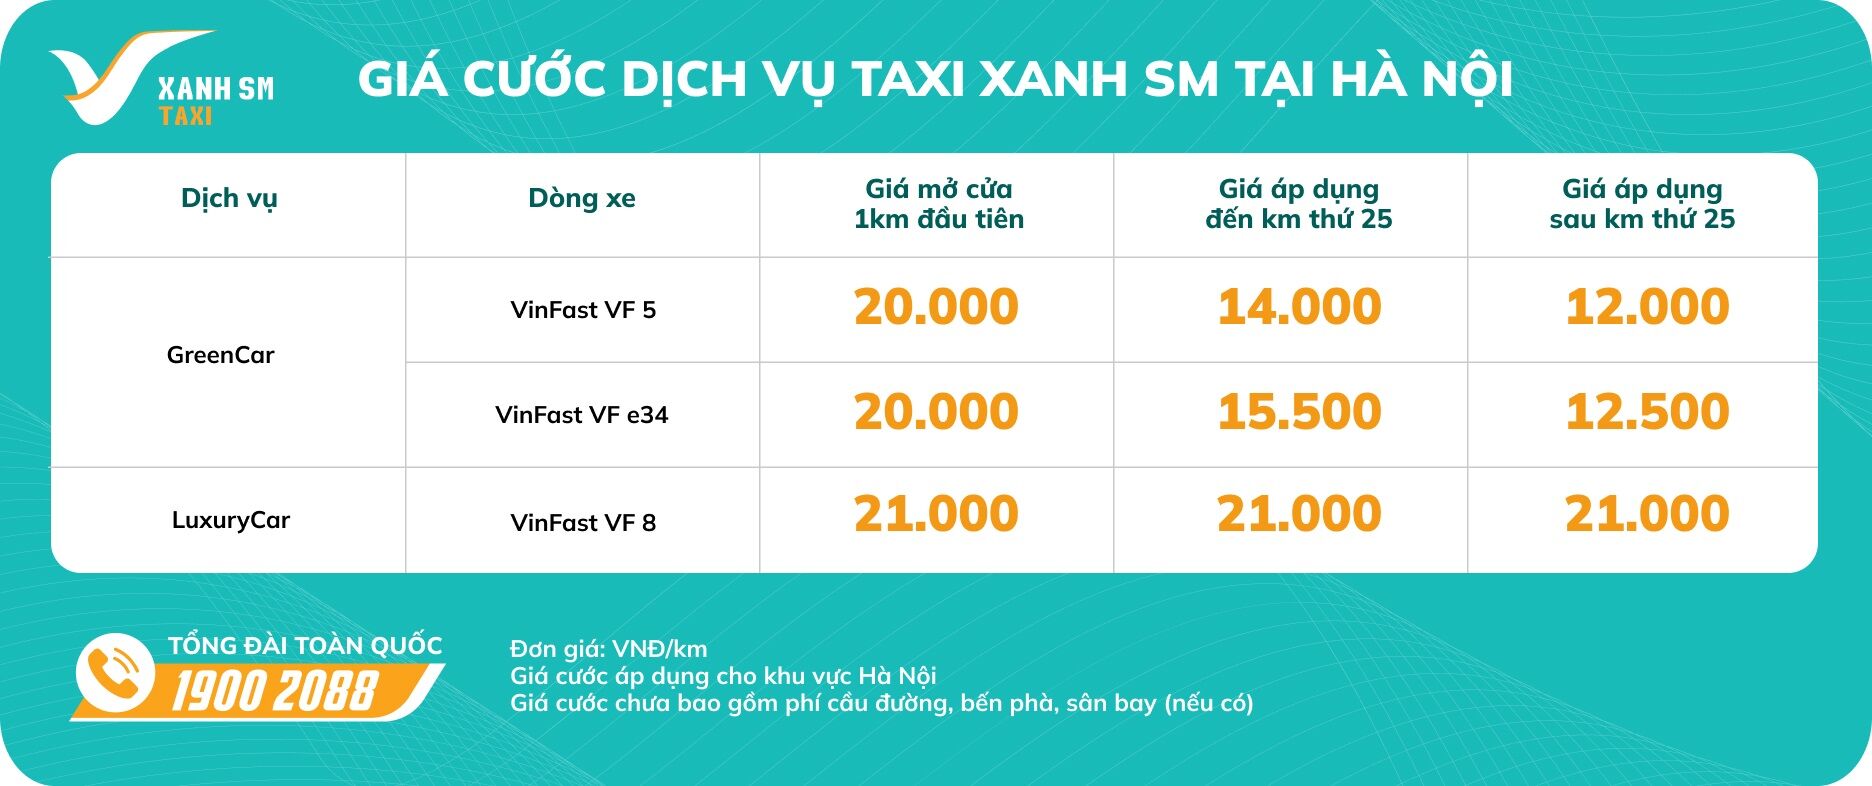 Giá cước Taxi Xanh SM